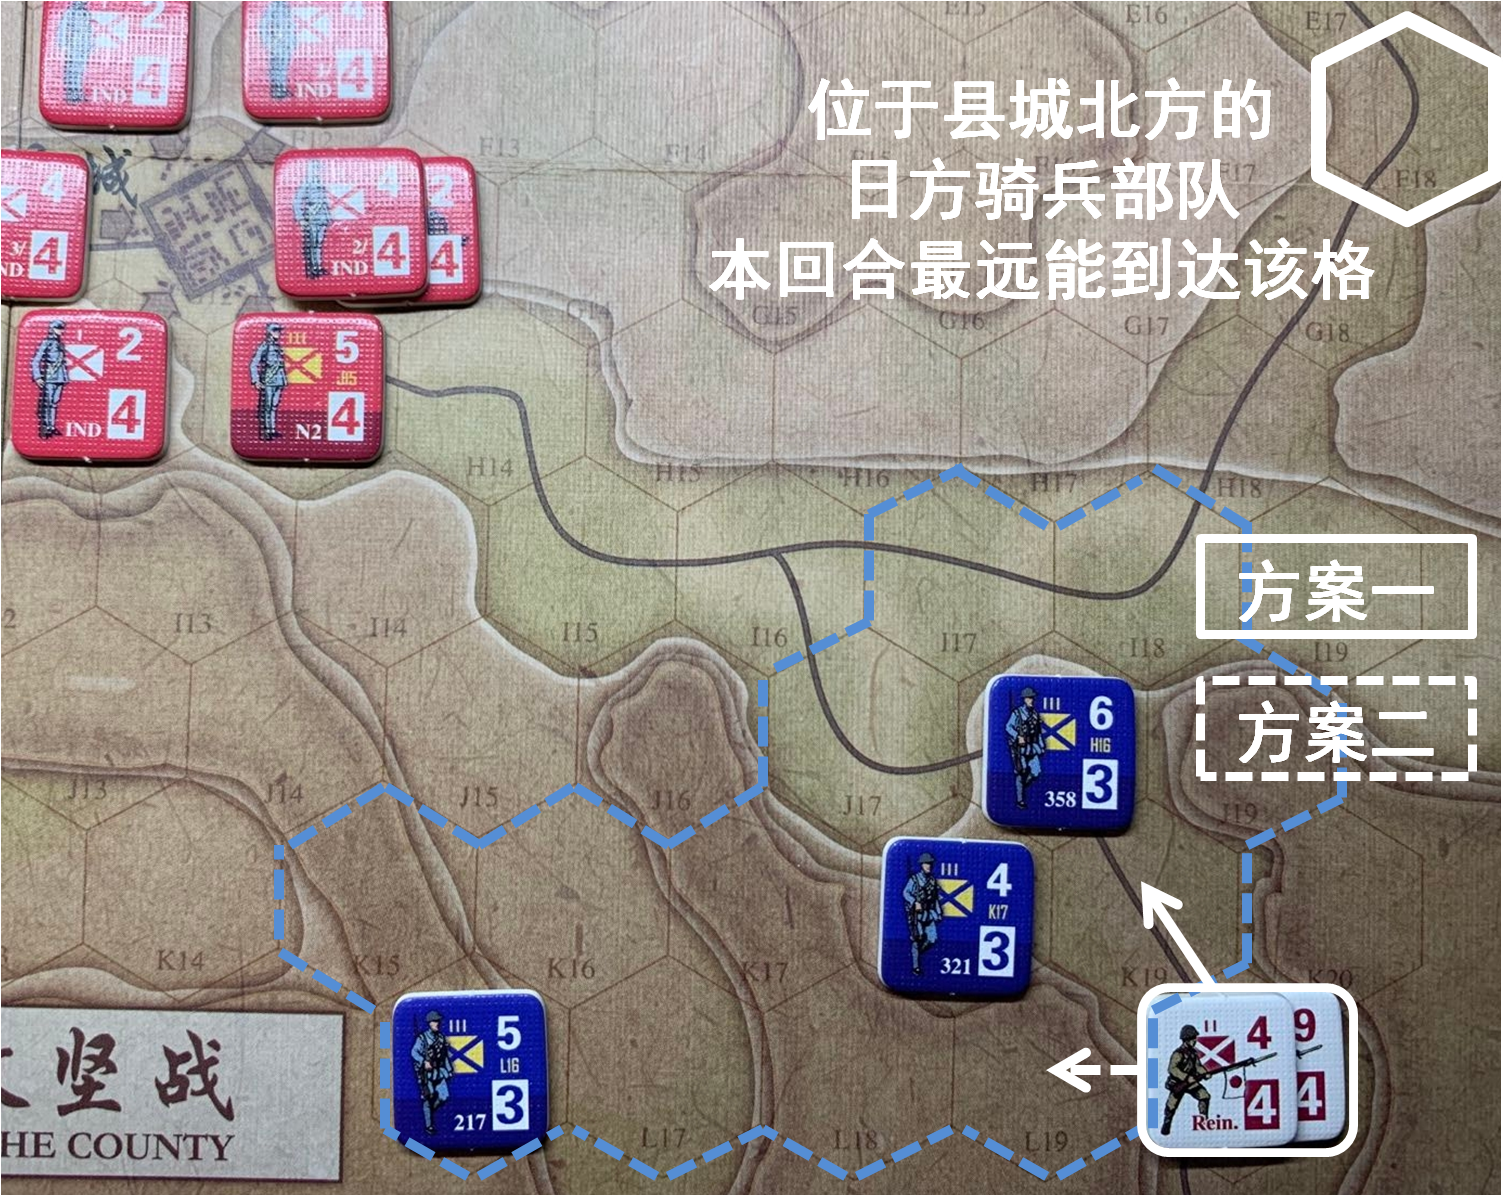 第一回合国军正规军部队对于移动命令4的执行结果和新的控制区覆盖范围，及随后本回合日方移动阶段路羊方向日军增援部队可能的移动方案